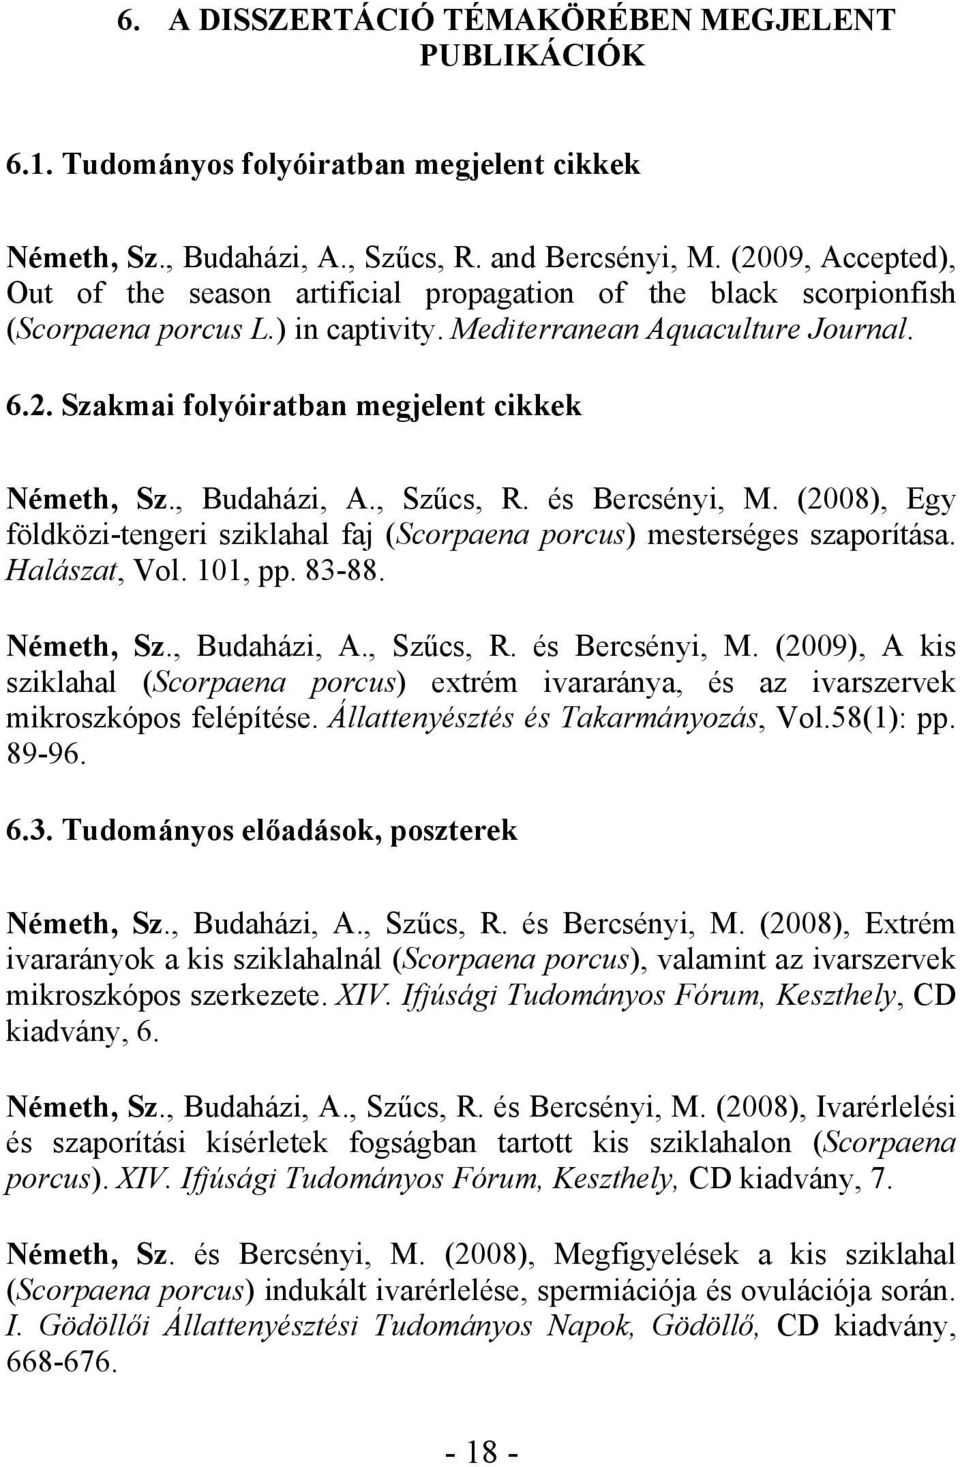 , Budaházi, A., Szűcs, R. és Bercsényi, M. (2008), Egy földközi-tengeri sziklahal faj (Scorpaena porcus) mesterséges szaporítása. Halászat, Vol. 101, pp. 83-88. Németh, Sz., Budaházi, A., Szűcs, R. és Bercsényi, M. (2009), A kis sziklahal (Scorpaena porcus) extrém ivararánya, és az ivarszervek mikroszkópos felépítése.